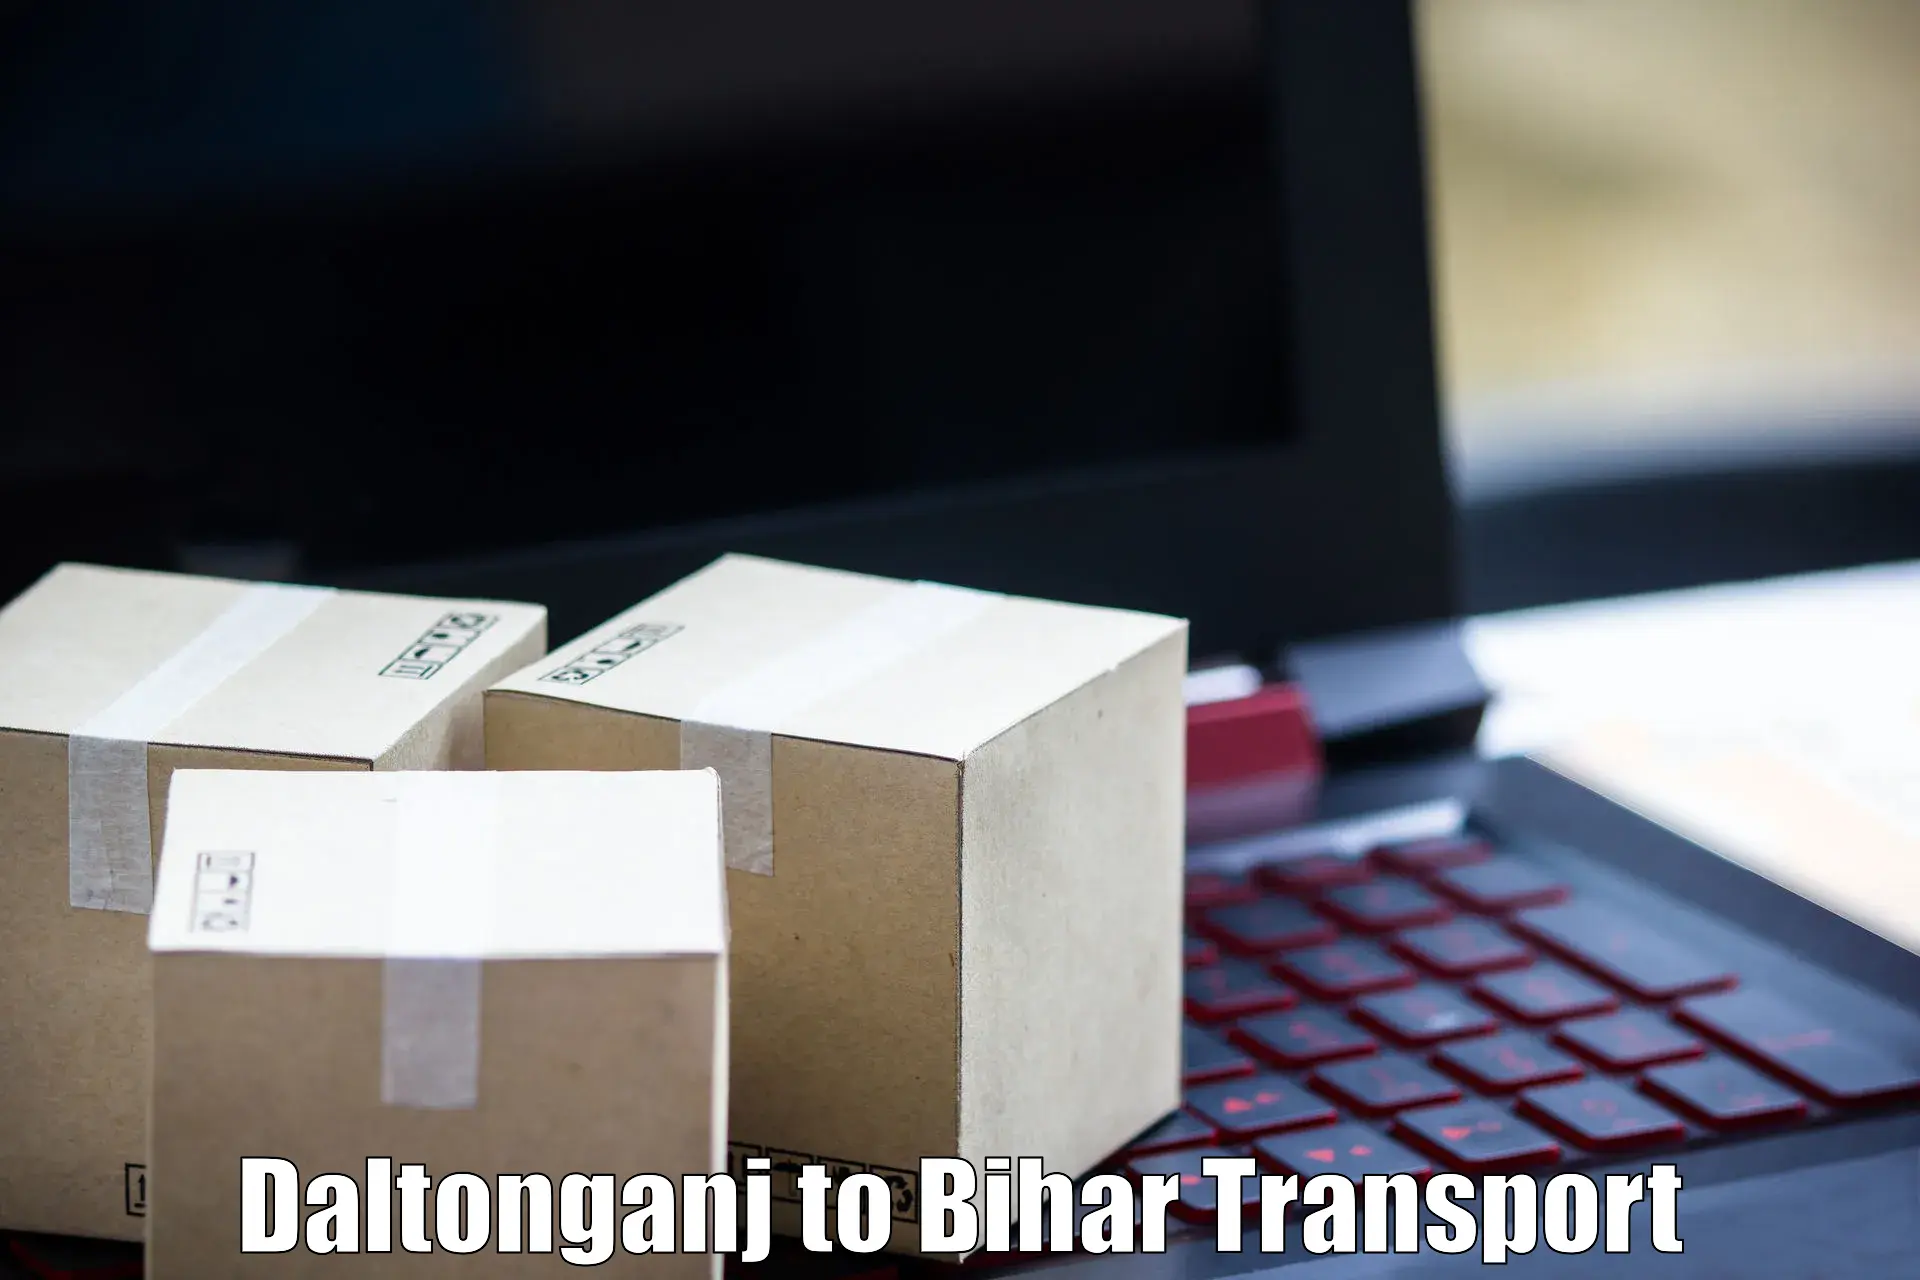 Daily transport service Daltonganj to Manihari